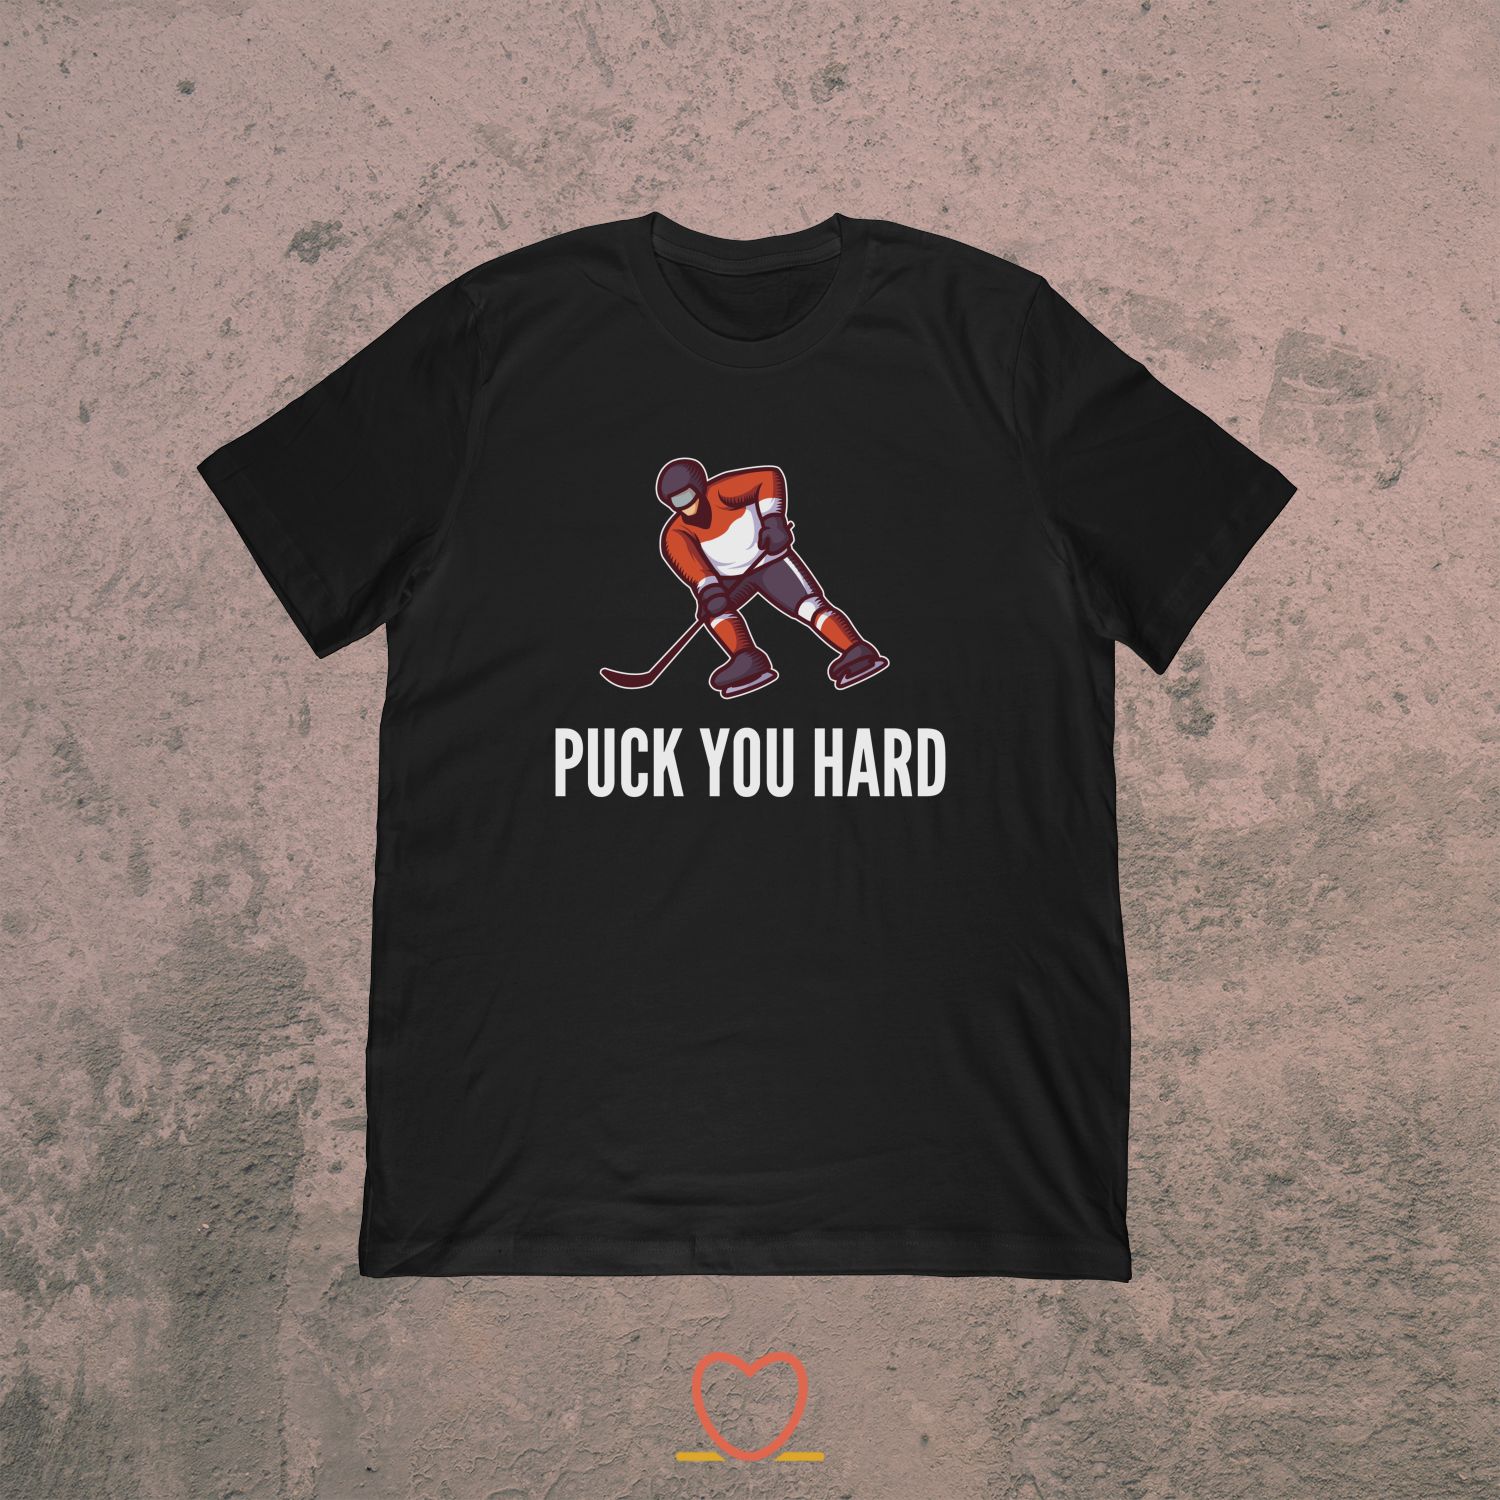 Puck You Hard – Funny Ice Hockey Tee